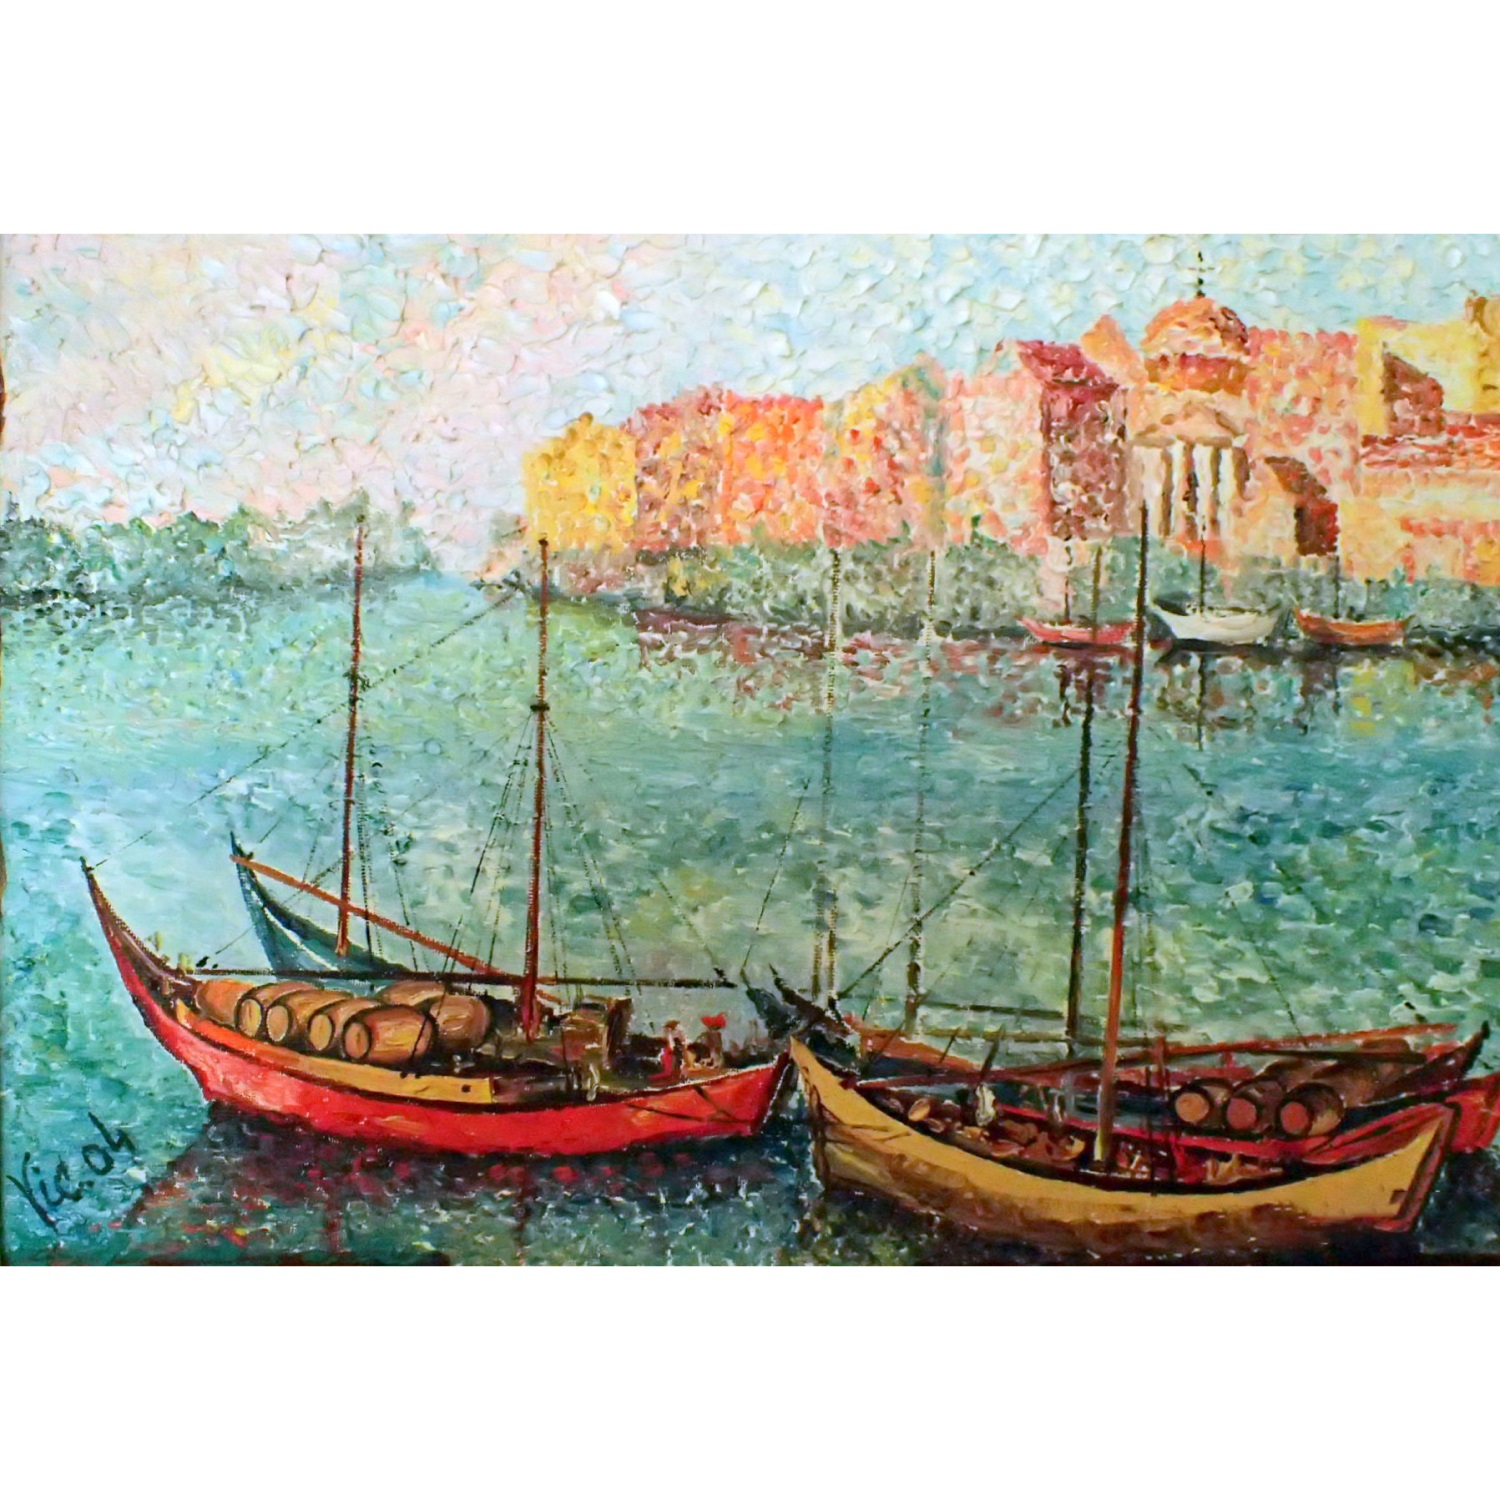 Купить картину Рыболовные фелюки  от художника Лоскутов Викторин